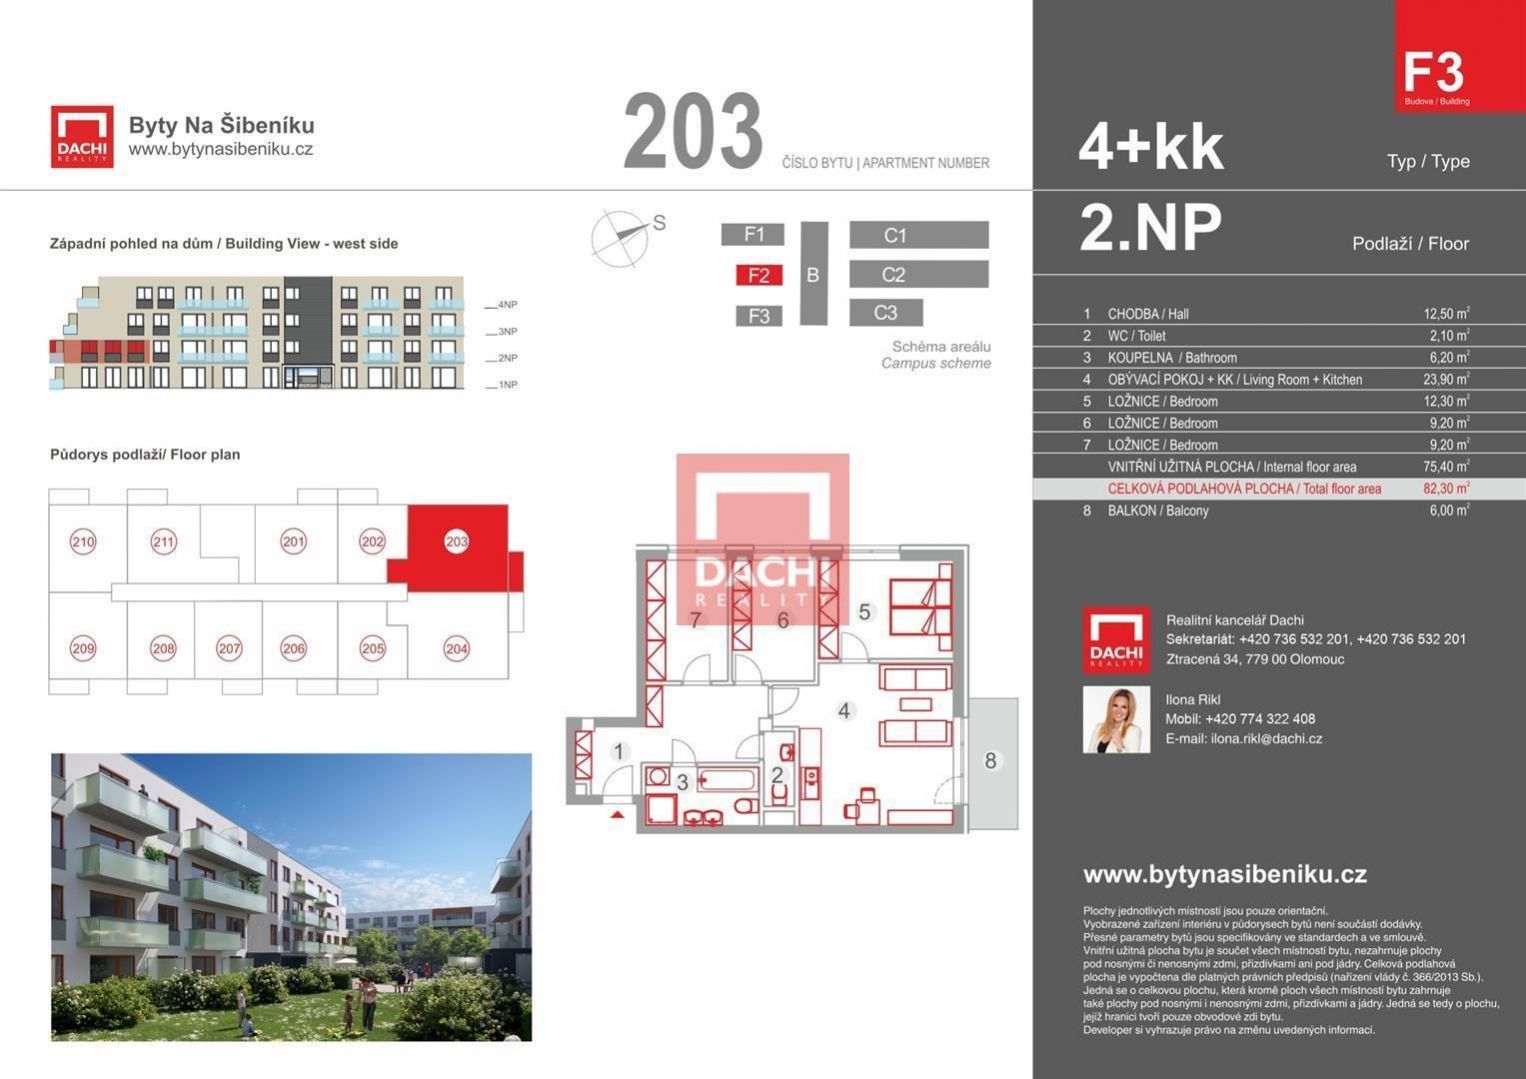 Prodej novostavby byt 203 F3  4+kk 82,30m s balkonem, Olomouc, Bytové domy Na Šibeníku II.etapa, obrázek č. 3